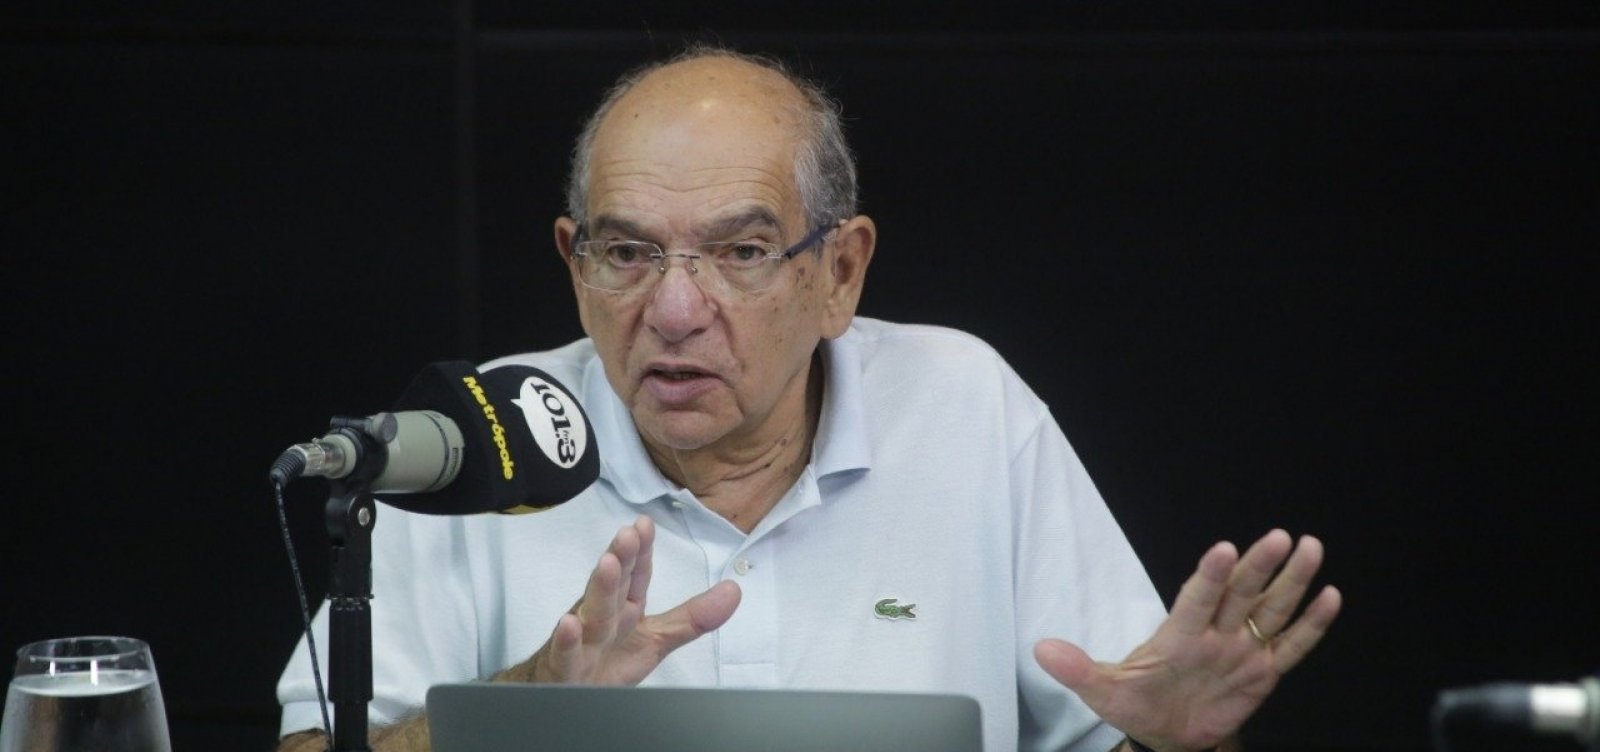 MK elogia 'fase mais calma' de Bolsonaro: 'Não precisamos de mais crise'; ouça